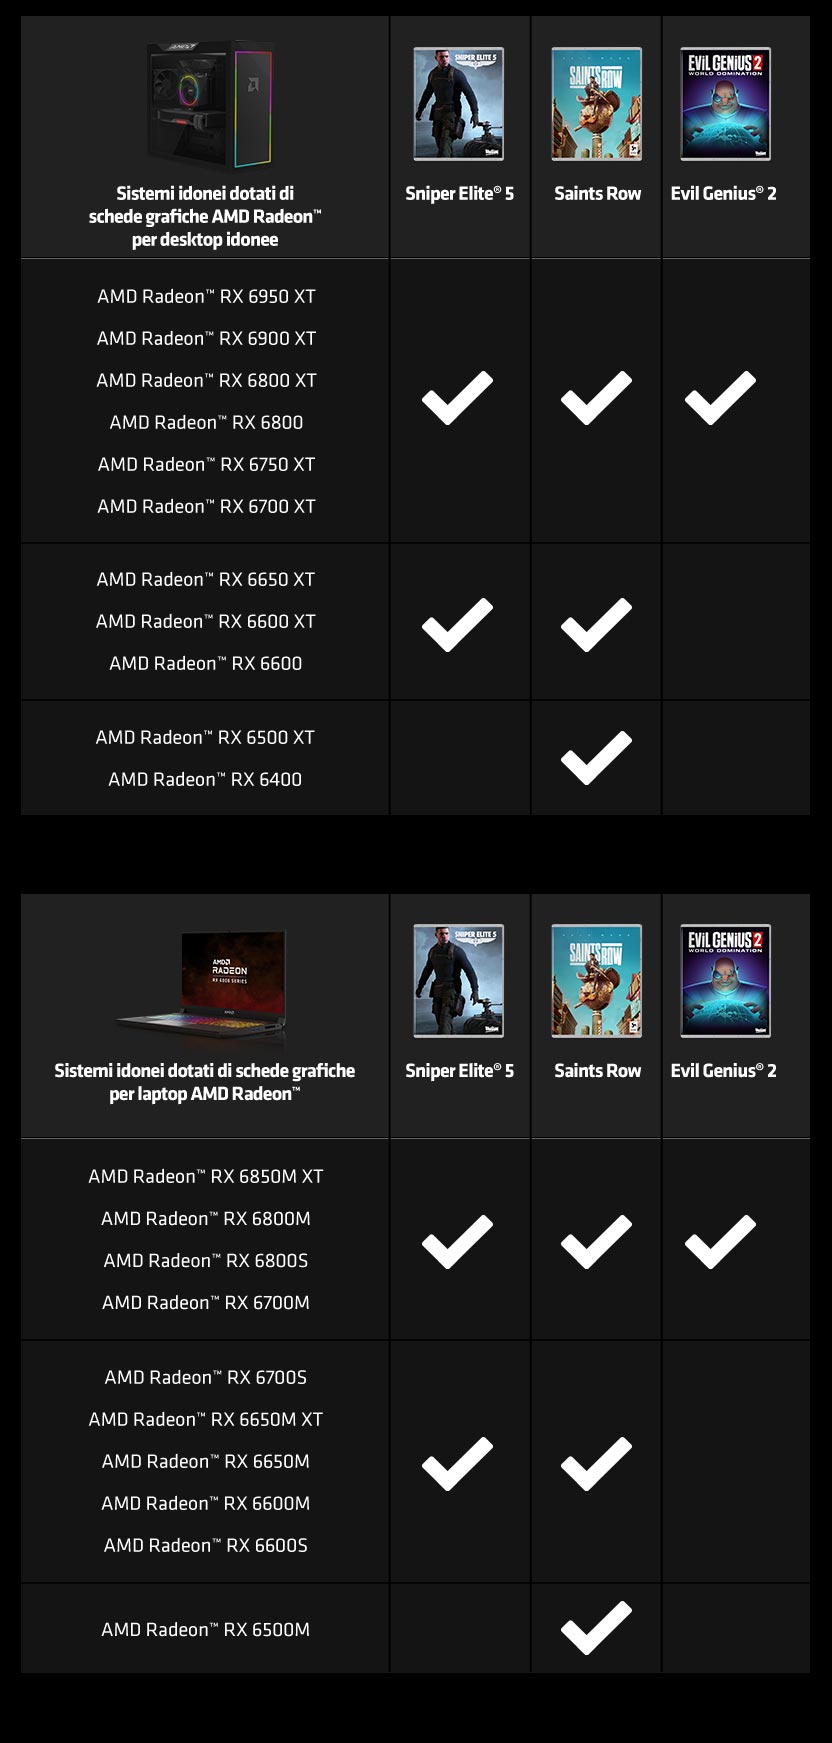 AMD Radeon Game Bundle